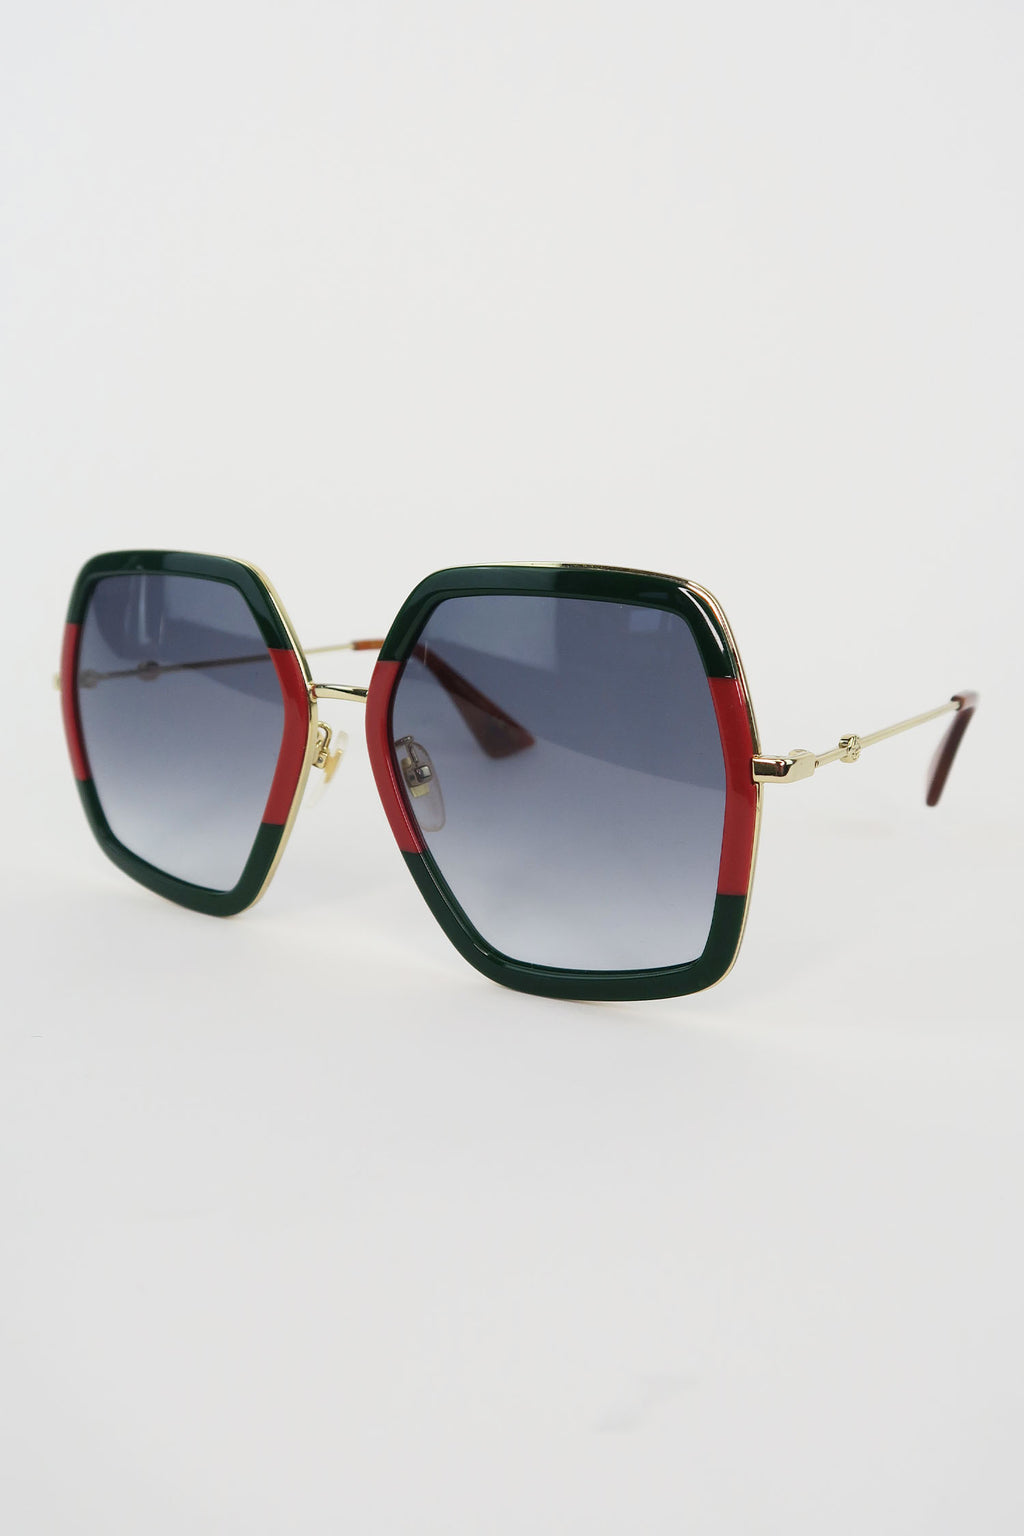 Gucci Web Accent Oversize Sunglasses